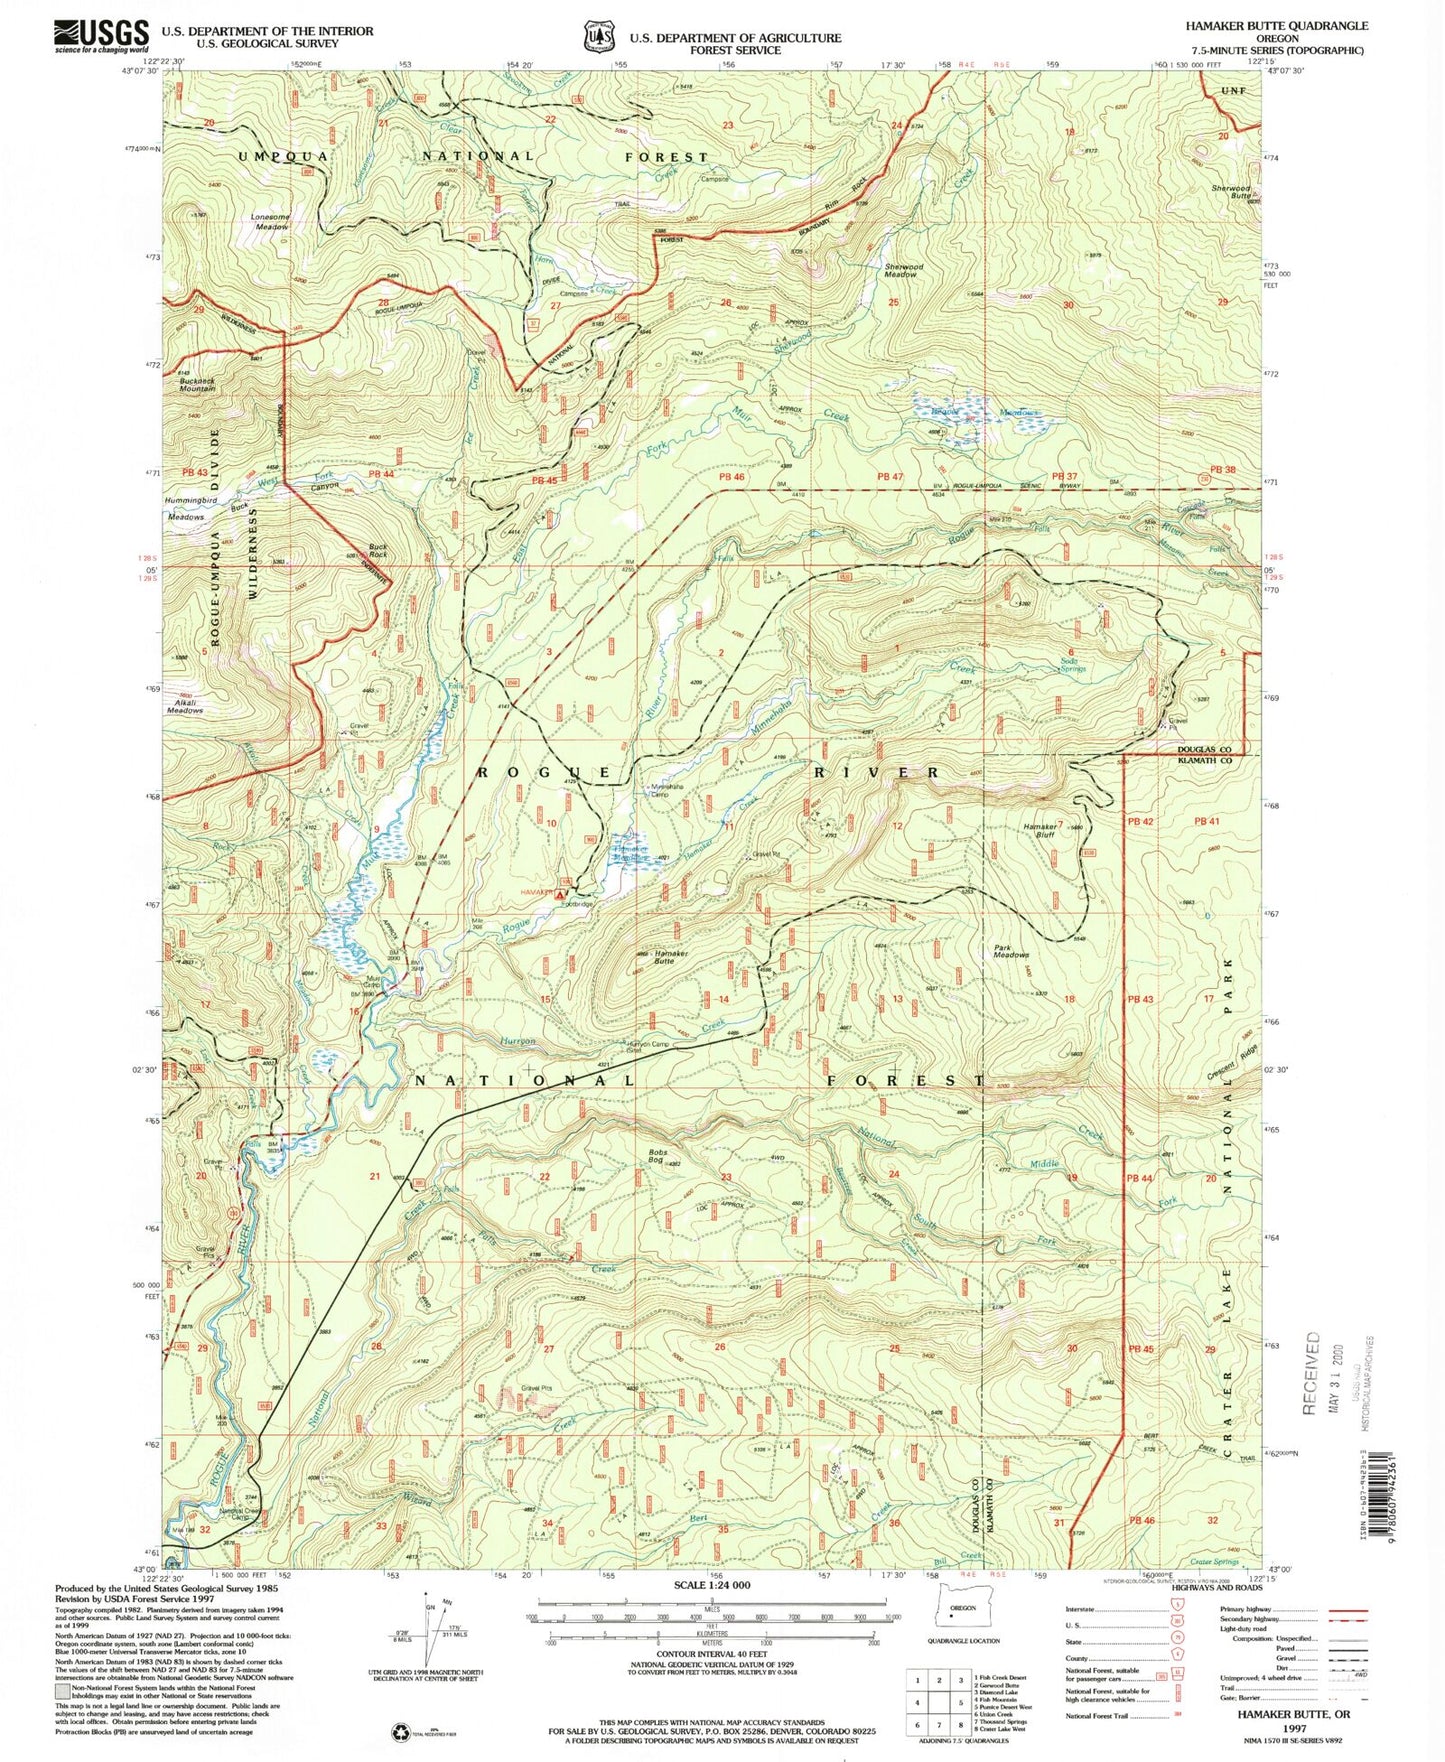 Classic USGS Hamaker Butte Oregon 7.5'x7.5' Topo Map Image